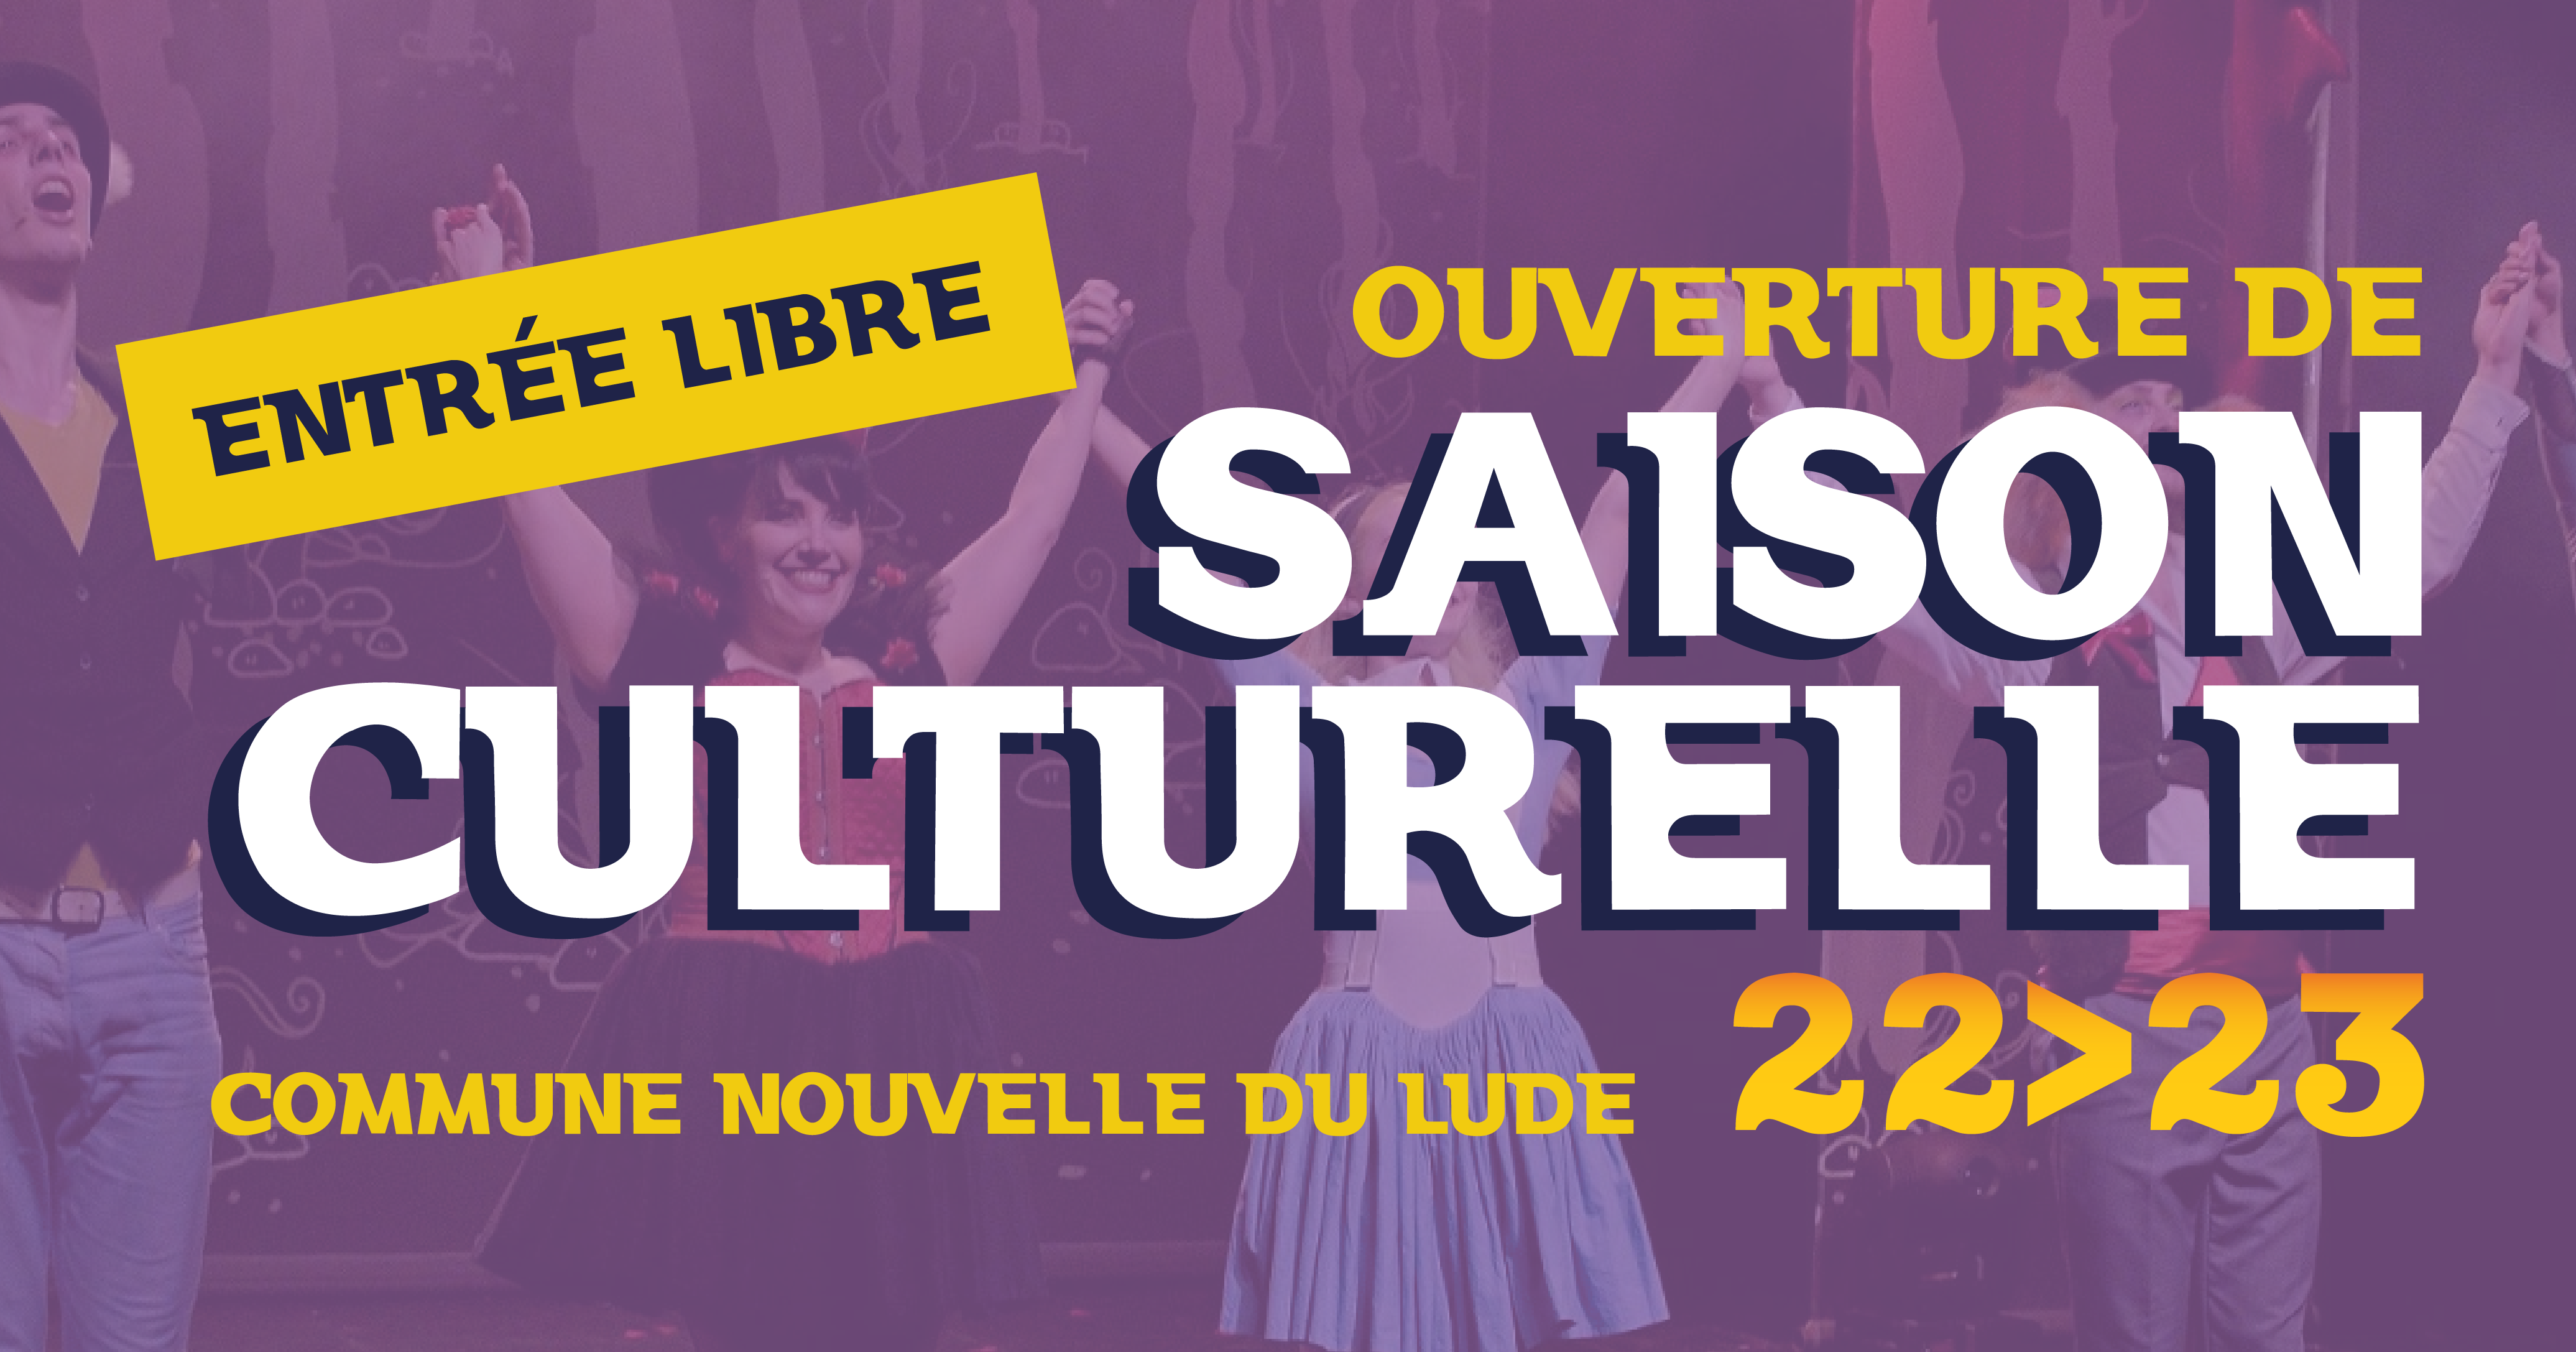 You are currently viewing Ouverture de saison culturelle 2022-2023